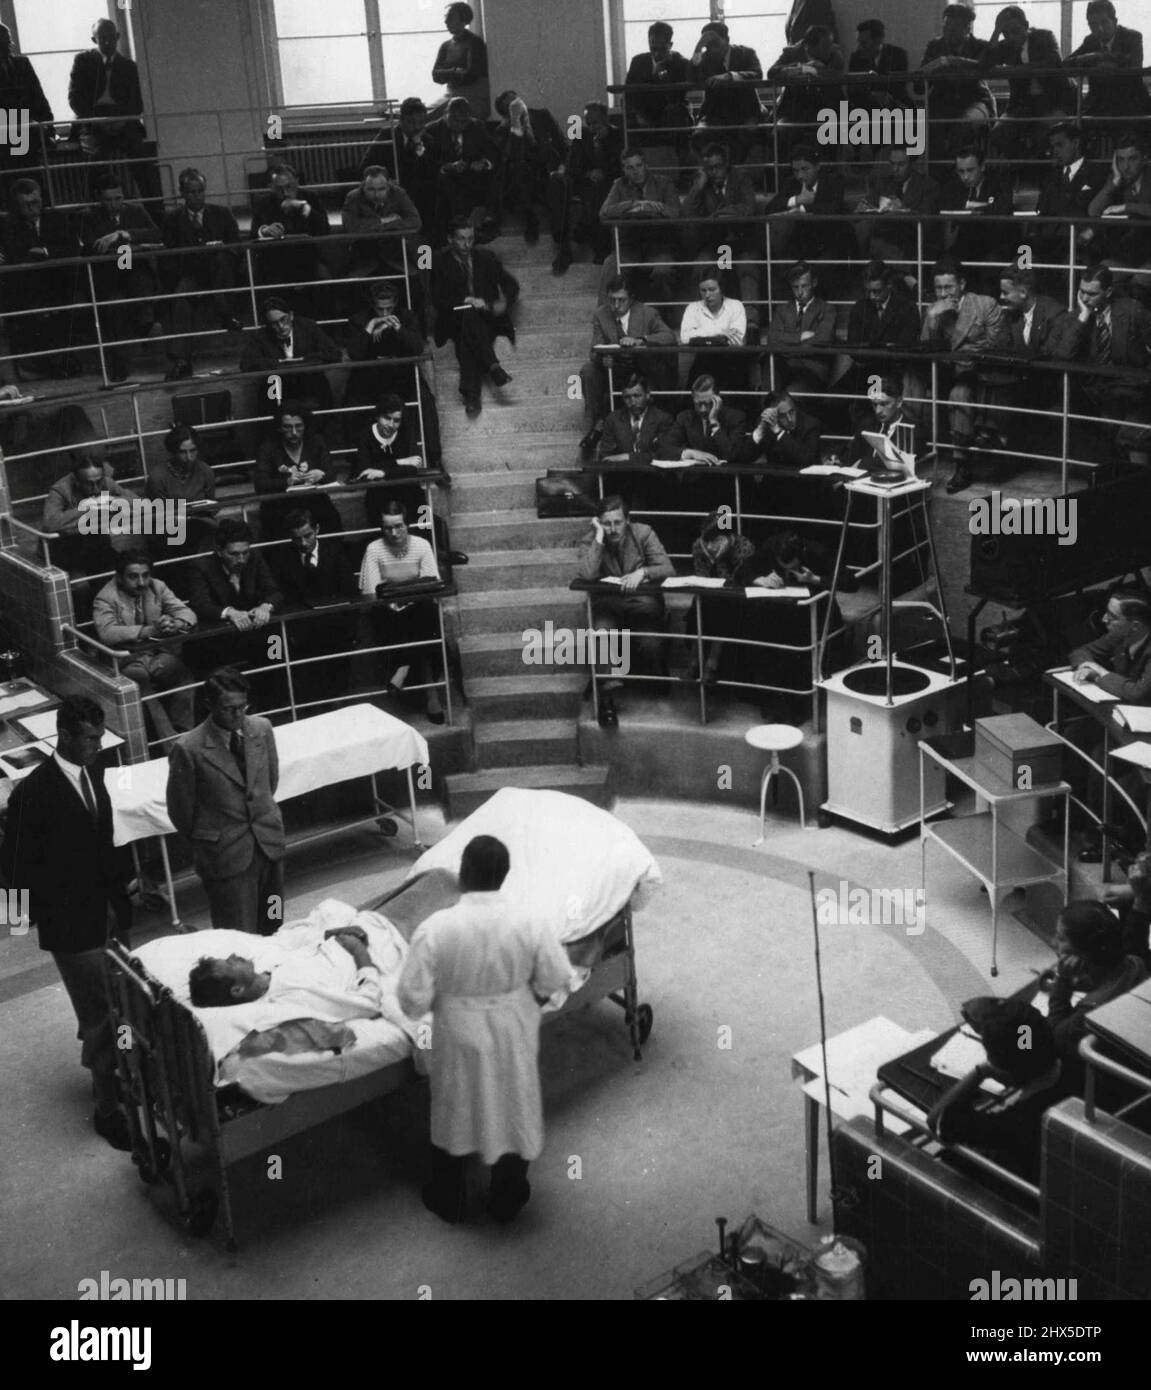 Odorated Talking Pictures -- alors, sur l'écran apparaît le théâtre d'opération d'un hôpital tandis que l'odeur typique d'éther et de chloroforme remplit l'air. 16 novembre 1940. (Photo de Paul Popper). Banque D'Images